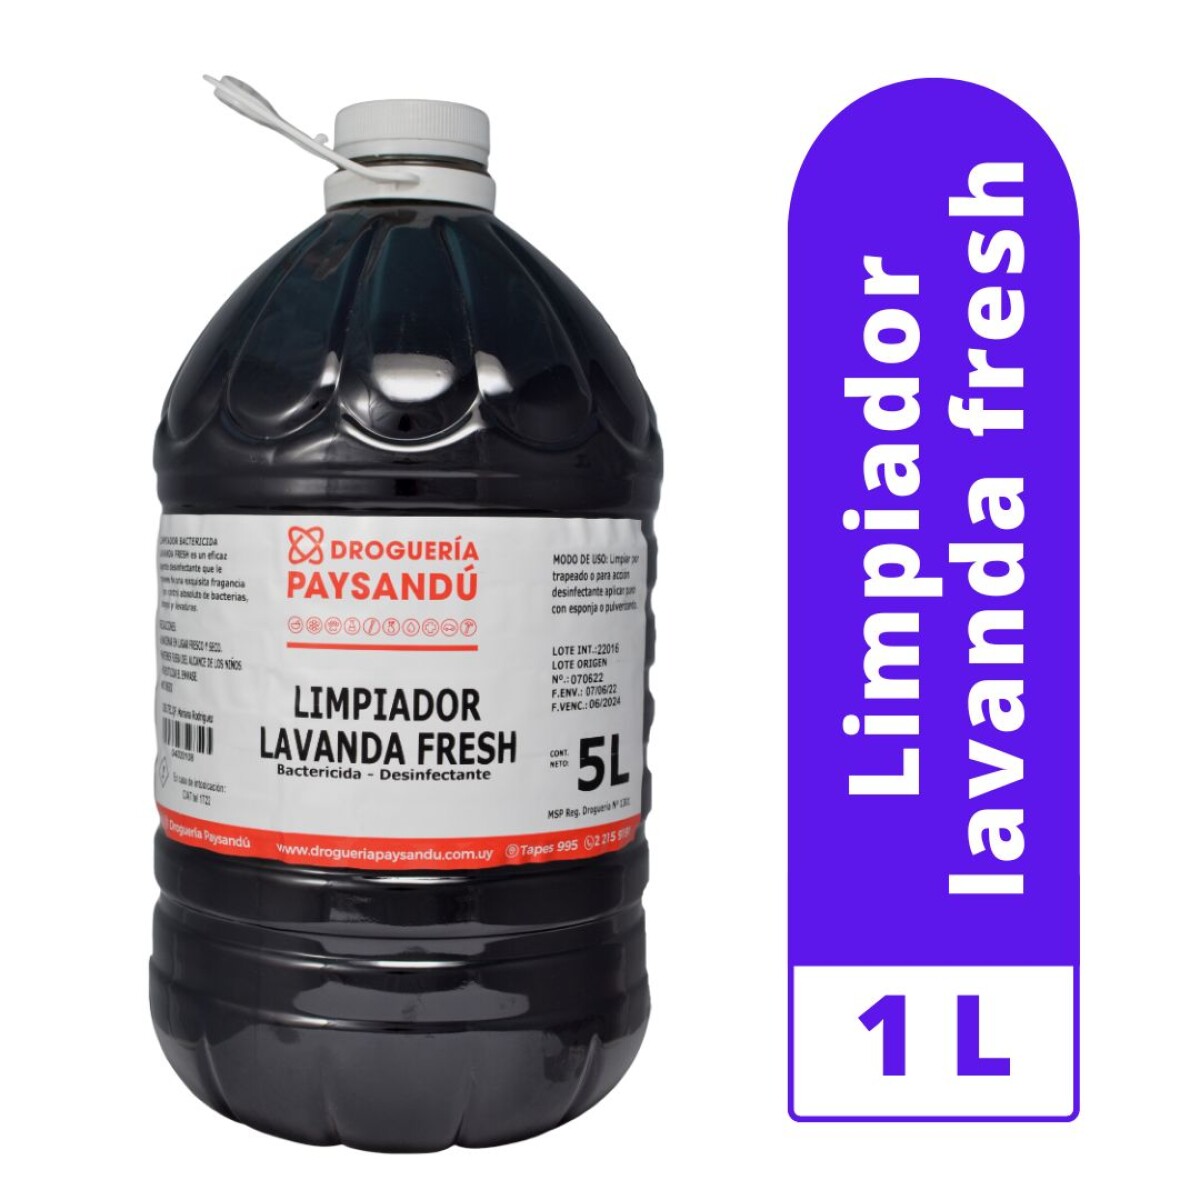 Limpiador Lavanda Fresh con Bactericida - 5 L 